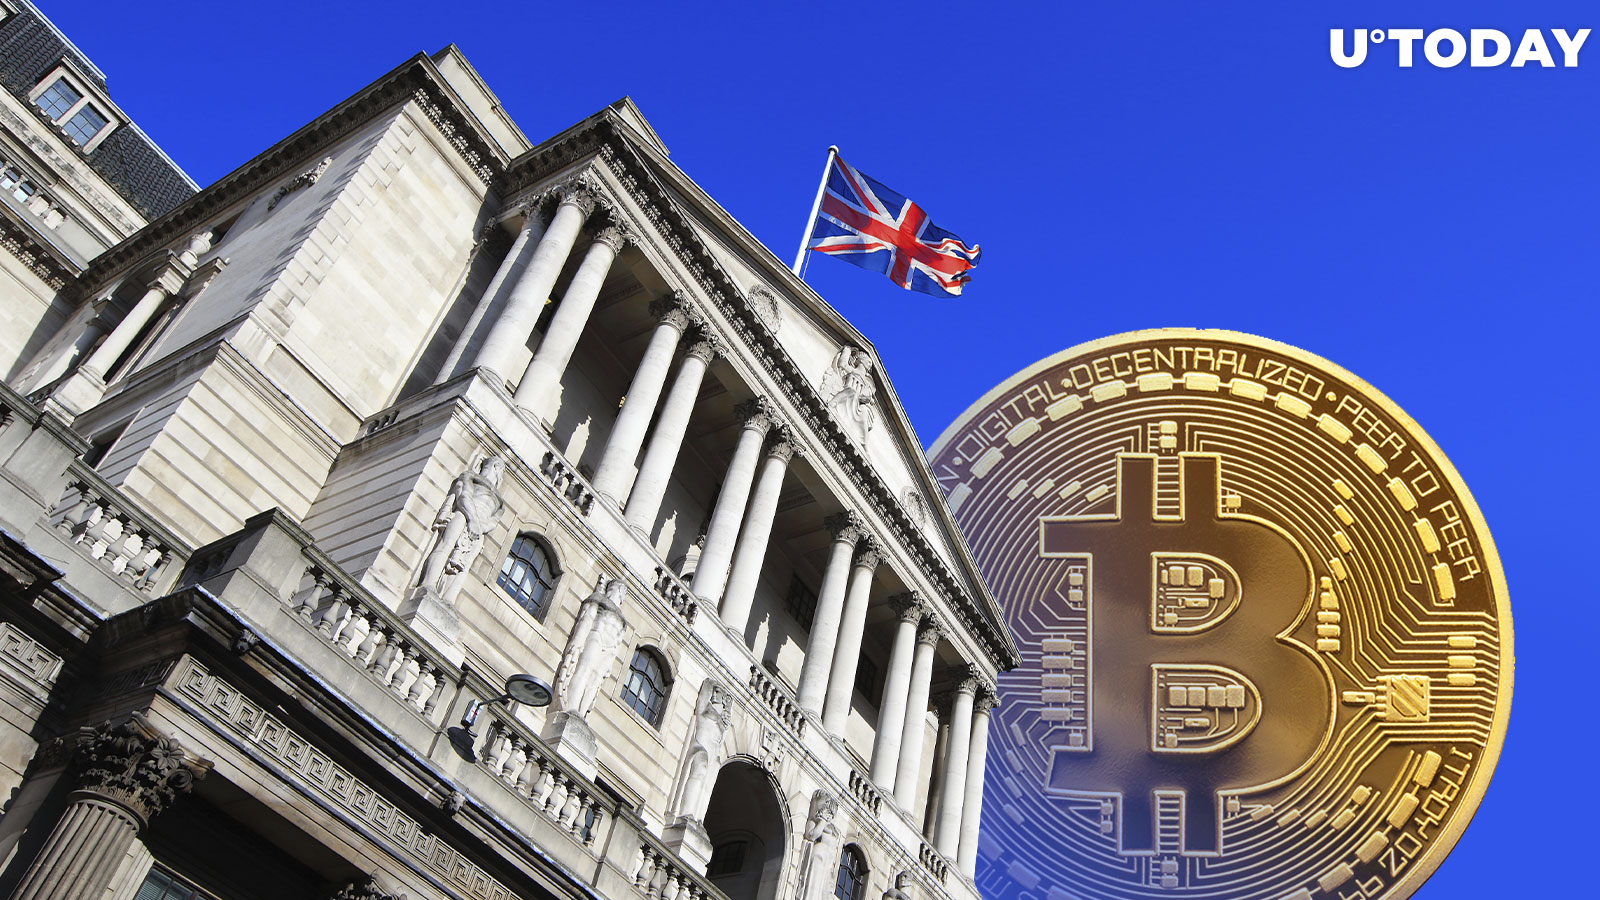 Bank of England Head Slams Bitcoin